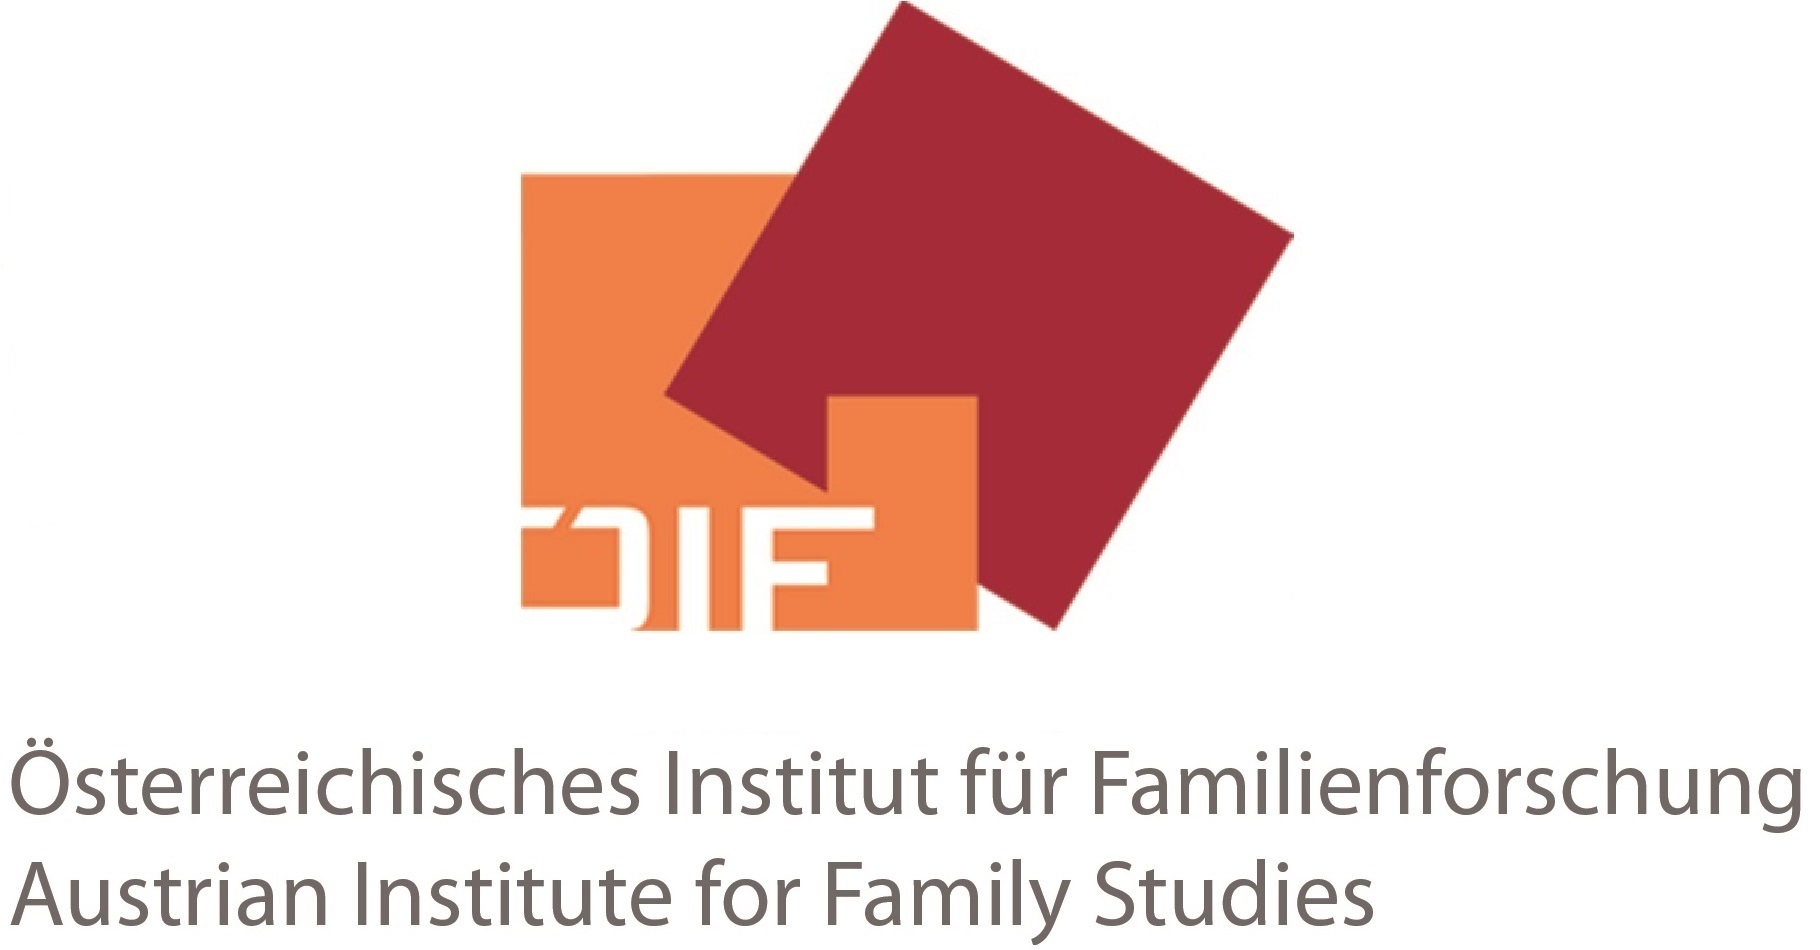 Österreichisches Institut für Familienforschung